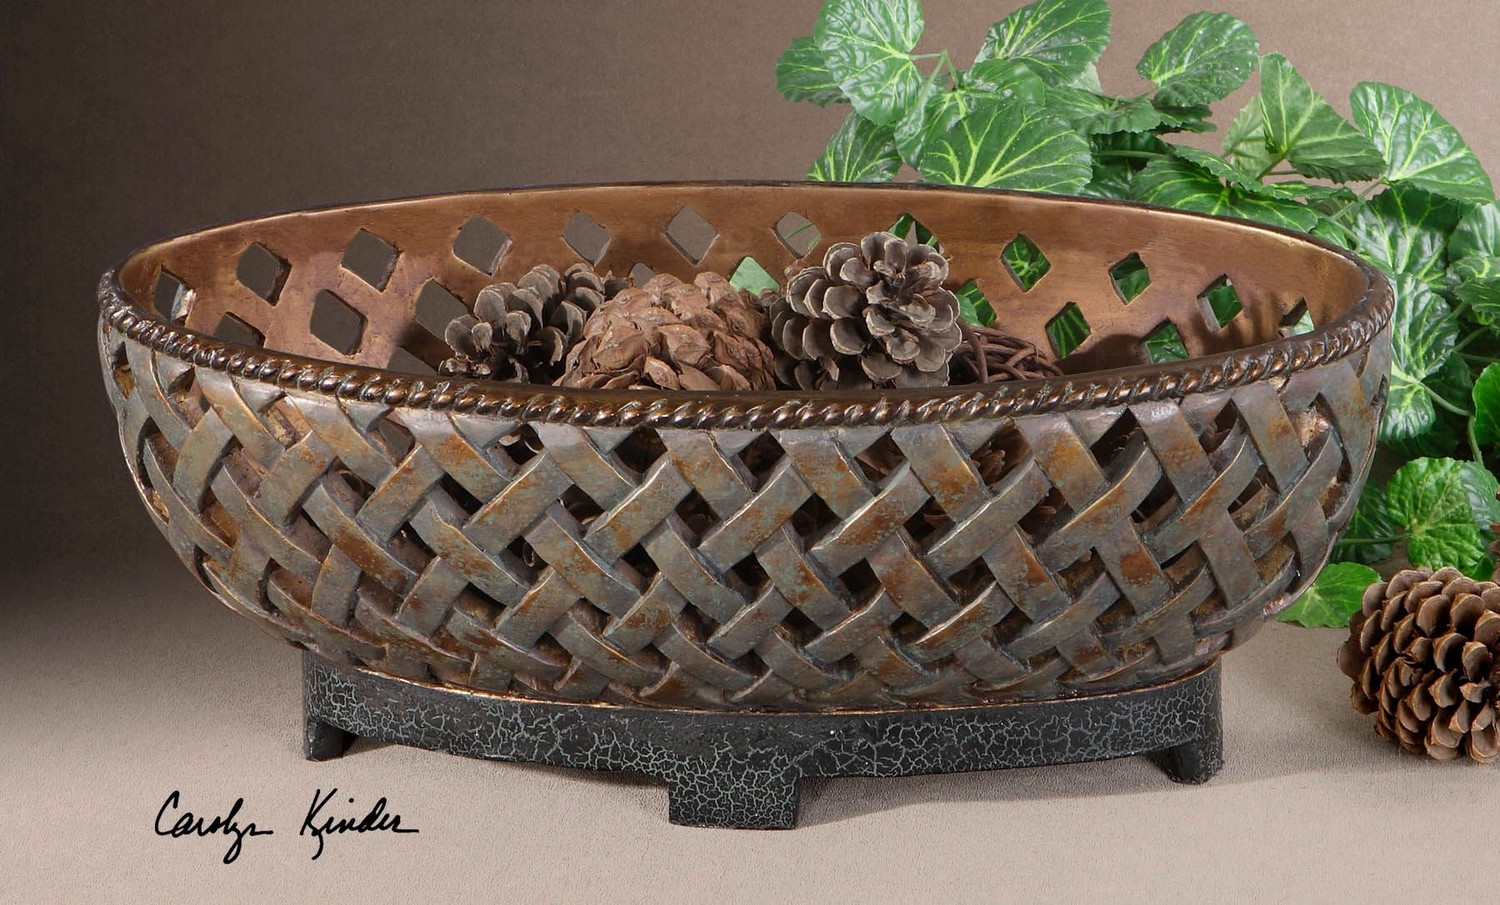 Uttermost Teneh Lattice Weave Design Bowl